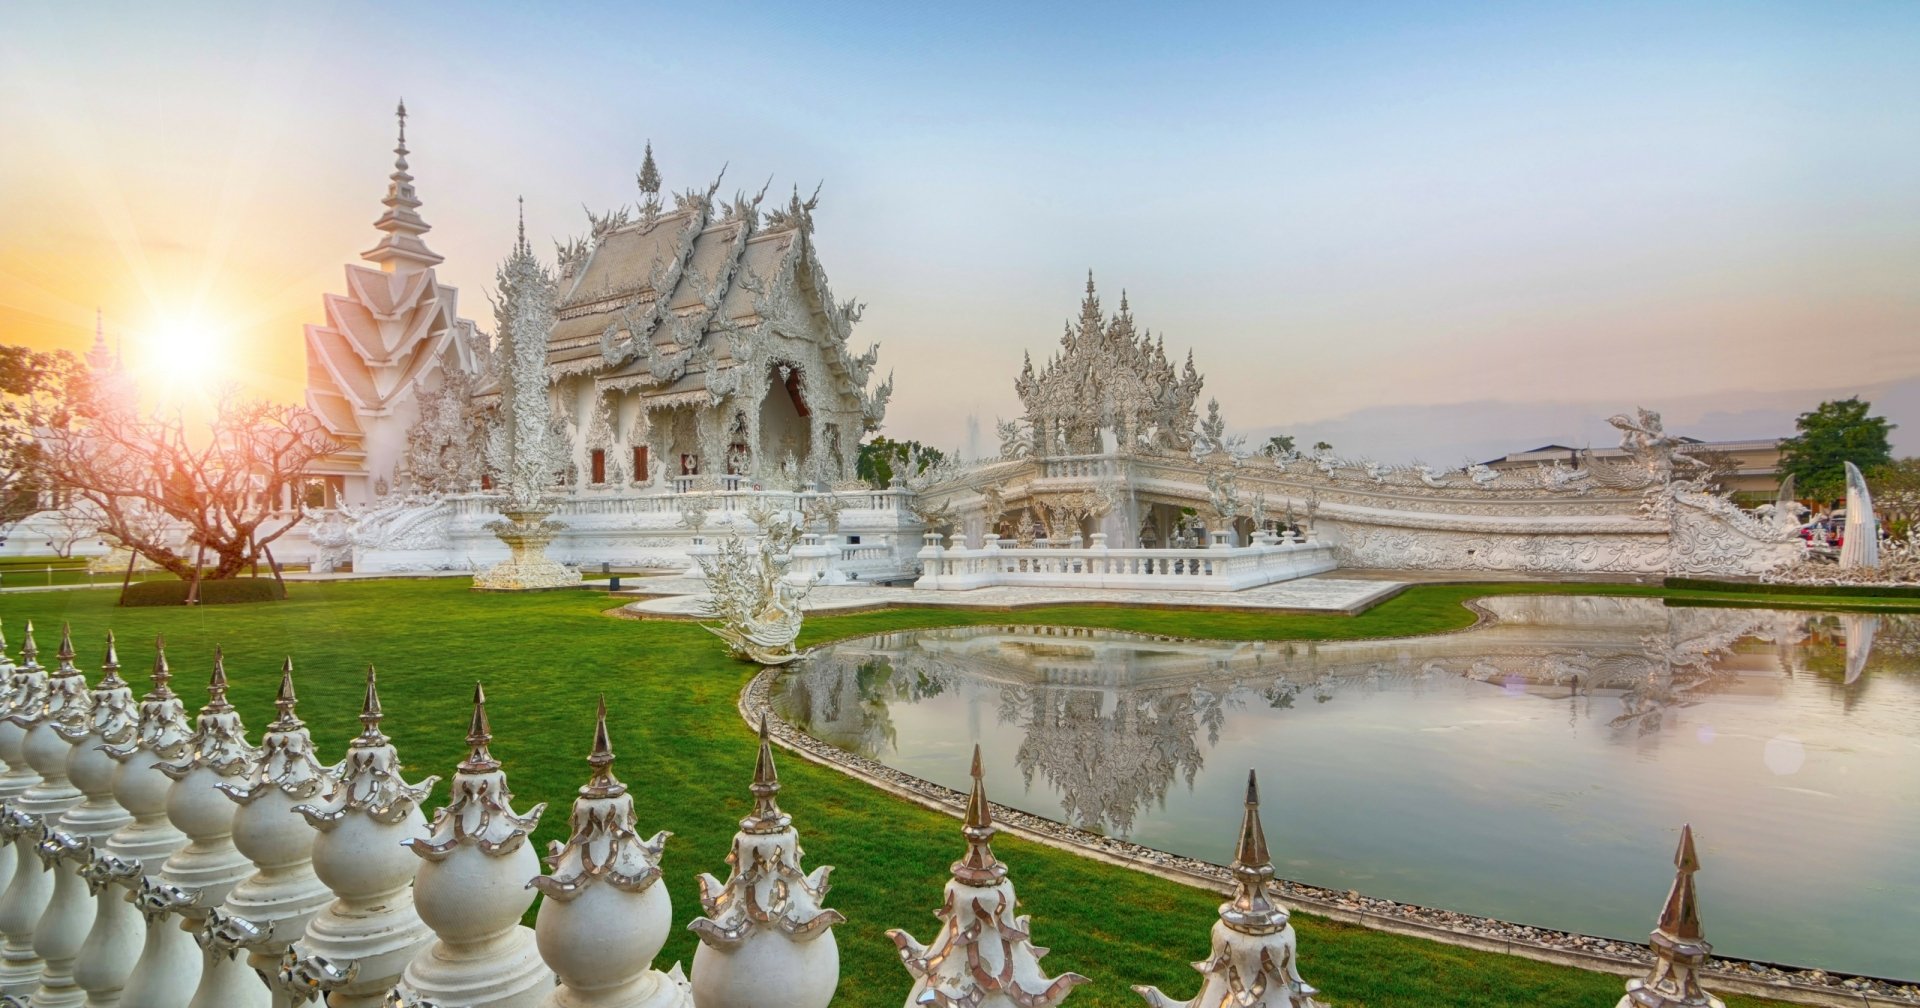 Chùa Bạch (\'White Temple\'): Chùa Bạch - một trong những nơi thánh linh đẹp nhất ở Thái Lan. Tuyệt tác kiến trúc trắng ngà, phối hợp hoàn hảo với cảnh quan xung quanh. Hãy đón xem hình ảnh chùa Bạch để cảm nhận sự thanh tịnh, tĩnh lặng và trân quý trong không gian linh thiêng.